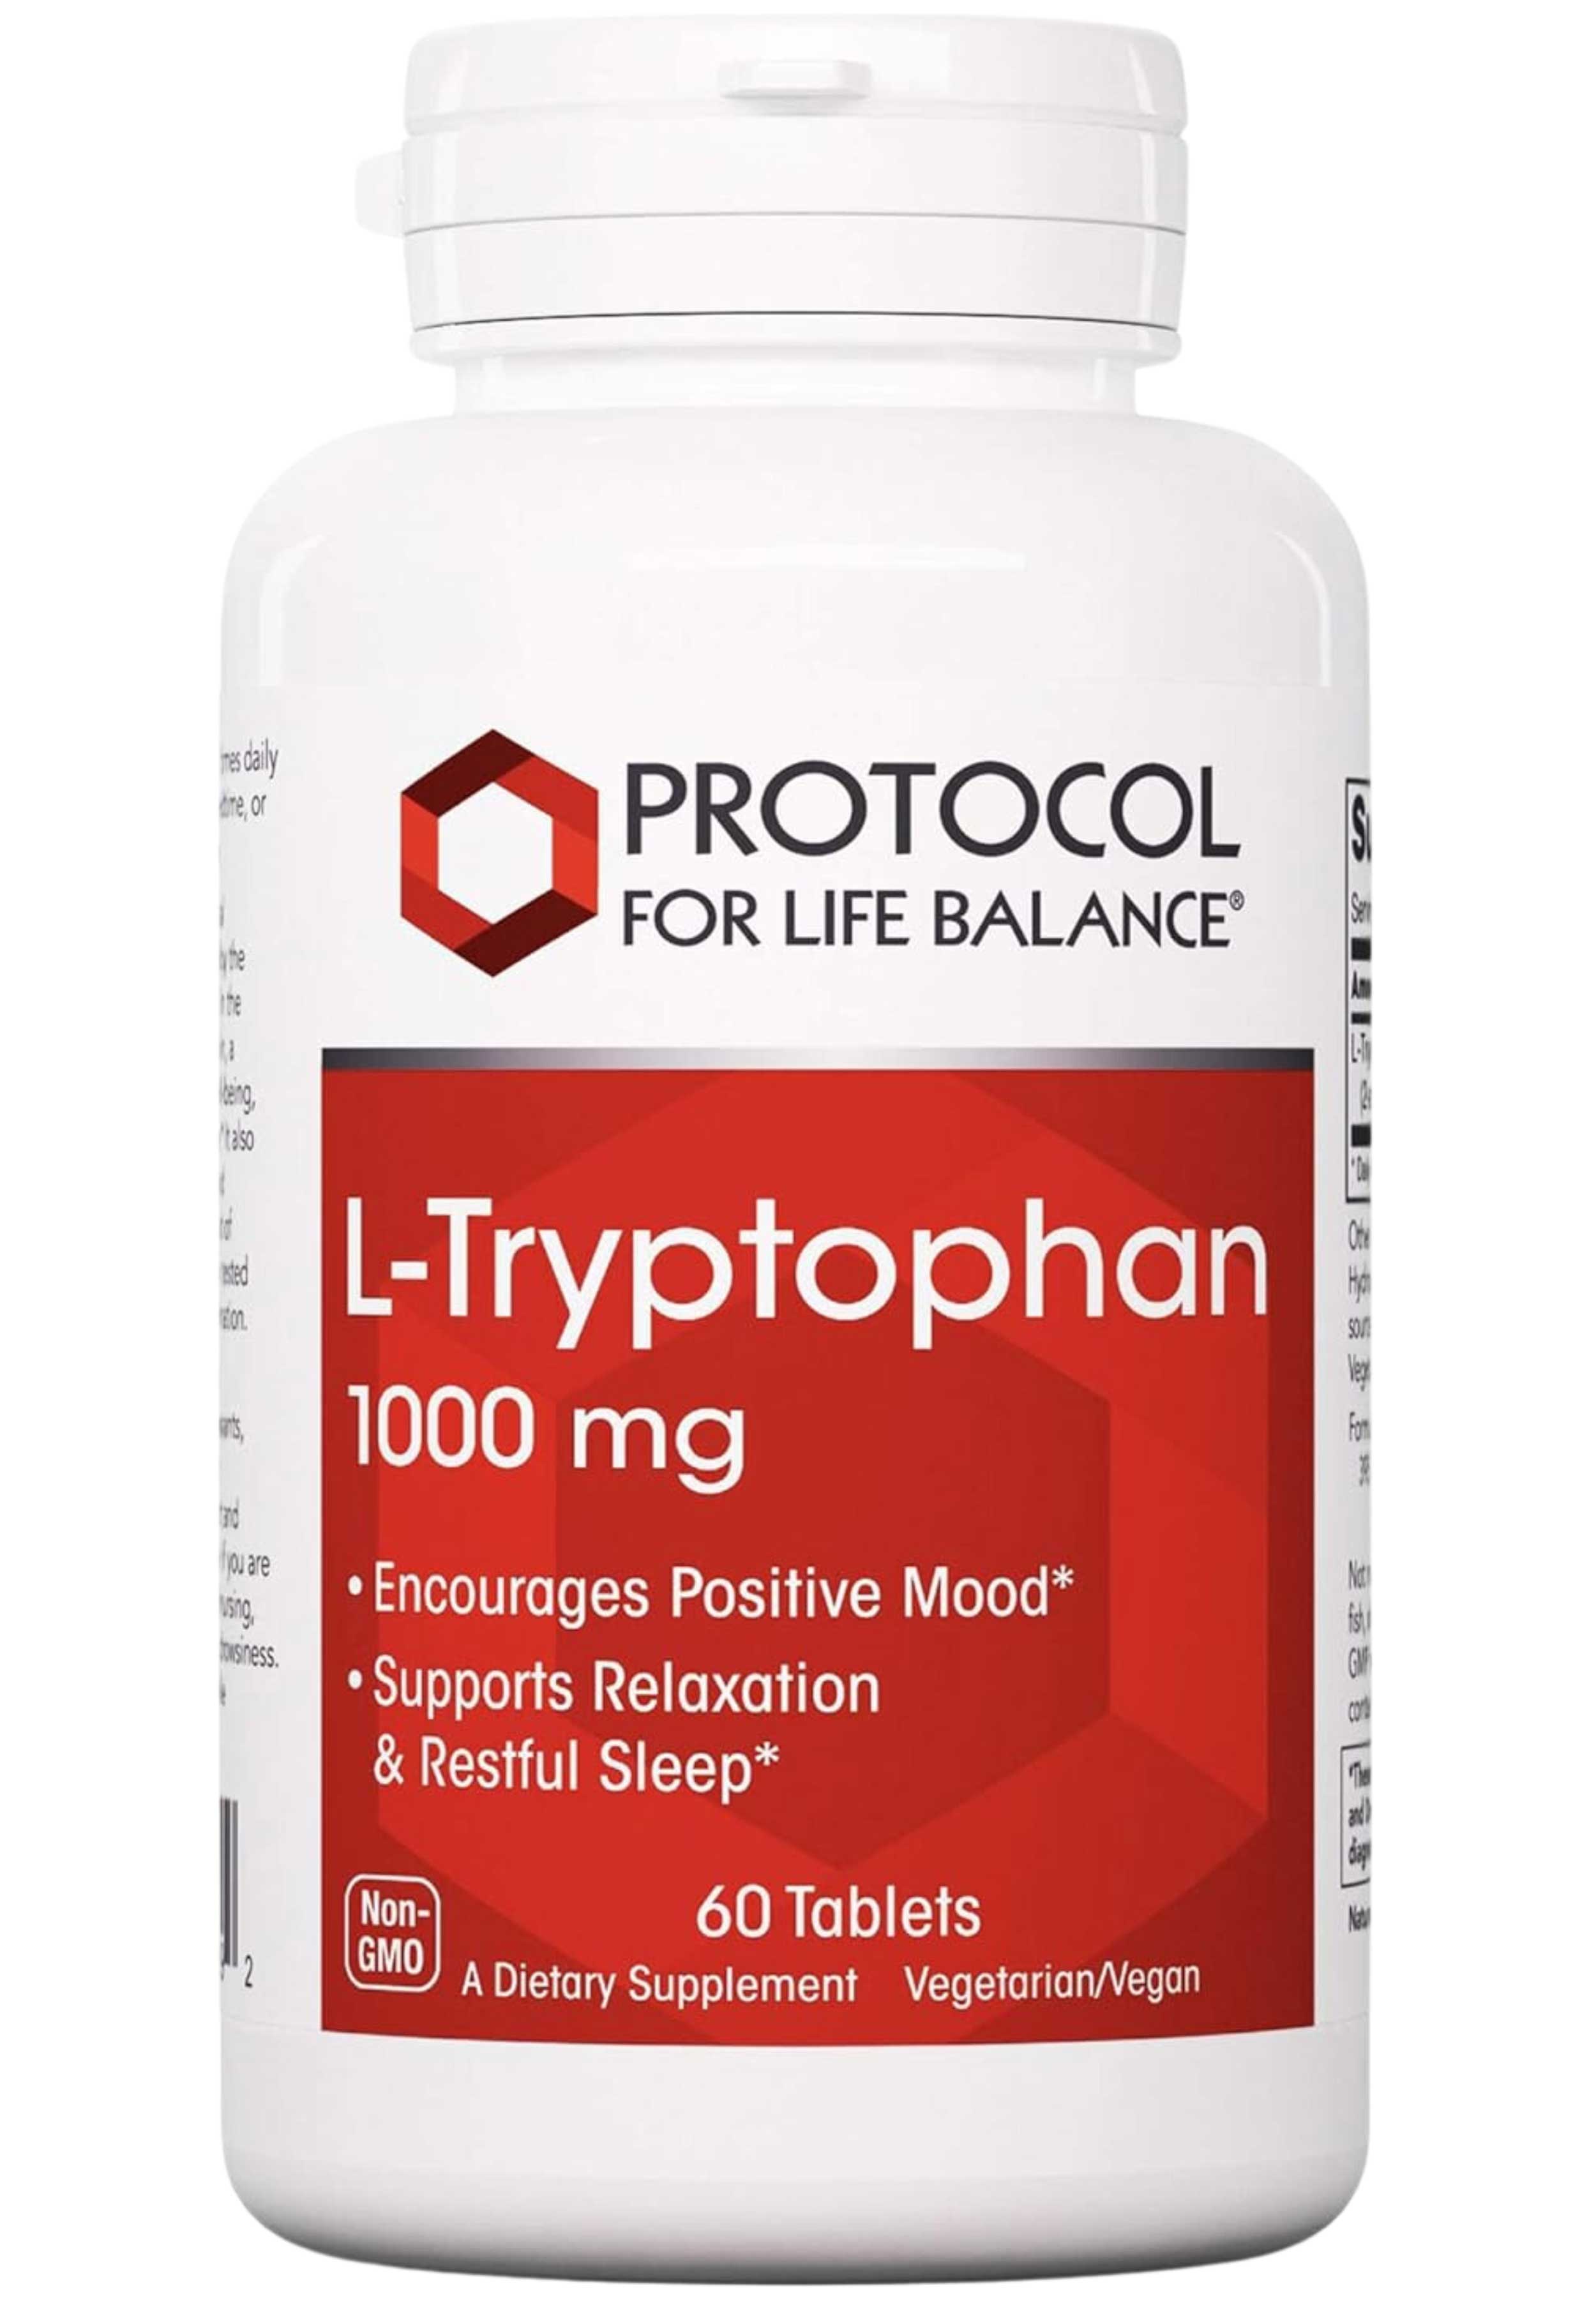 Protocol for Life Balance L-Tryptophan 1000 mg